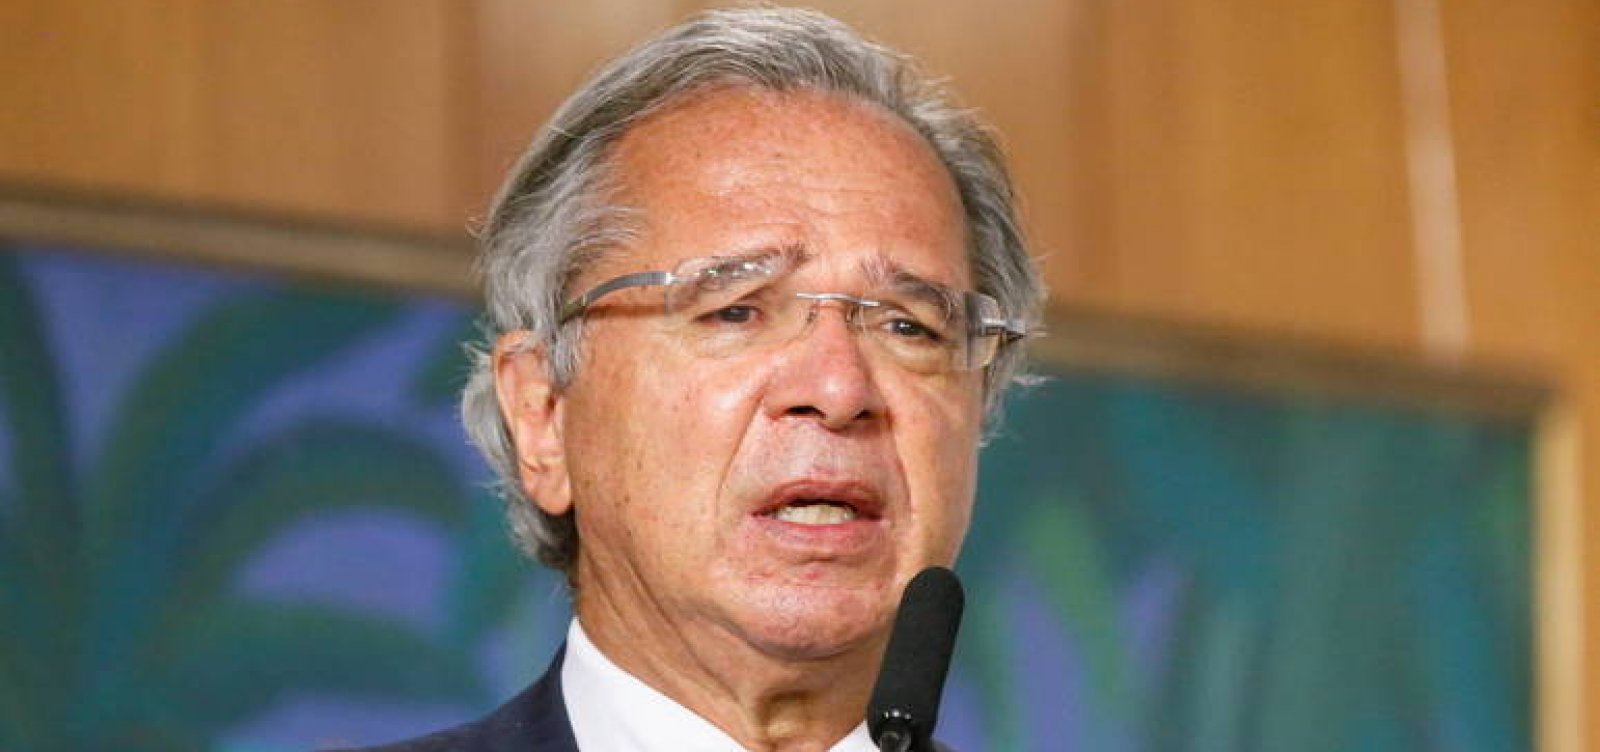 Coalizão com mais de 200 organizações pede impeachment de Guedes no STF